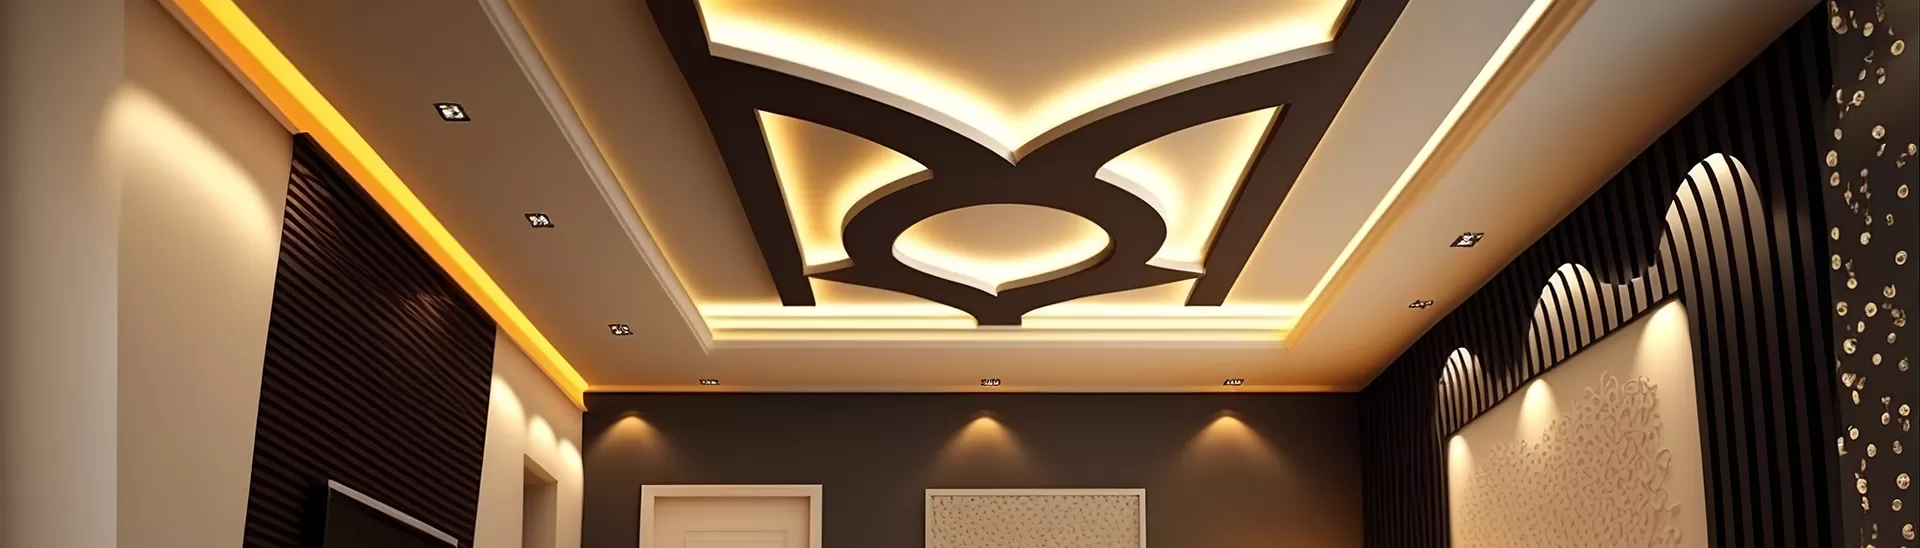 10-fabulous-false-ceiling-room-designs-for-modern-homes.jpg